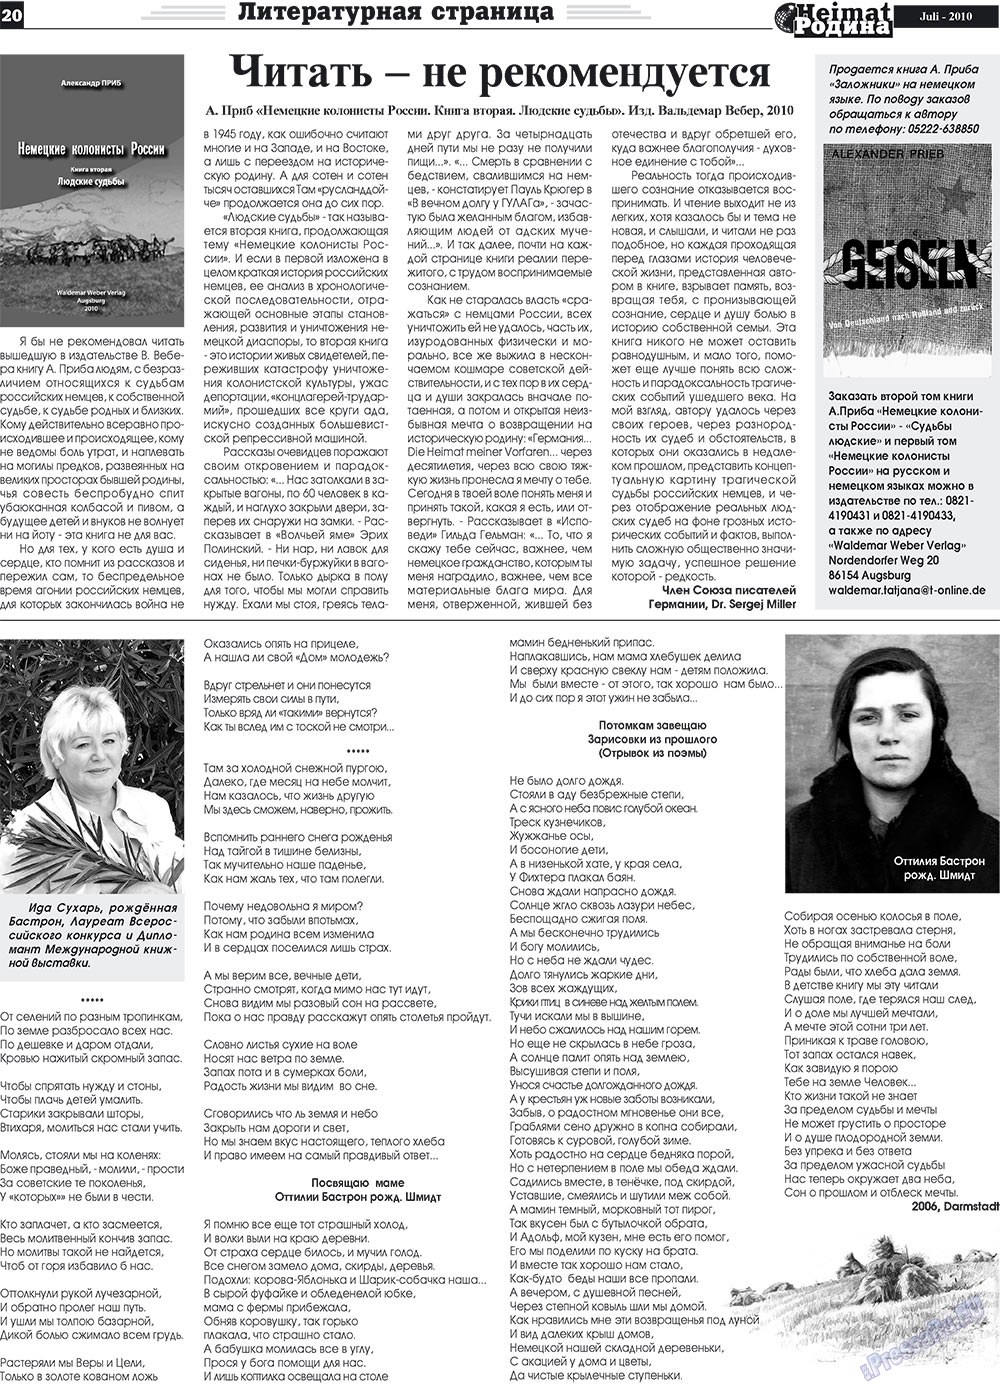 Heimat-Родина (газета). 2010 год, номер 7, стр. 20